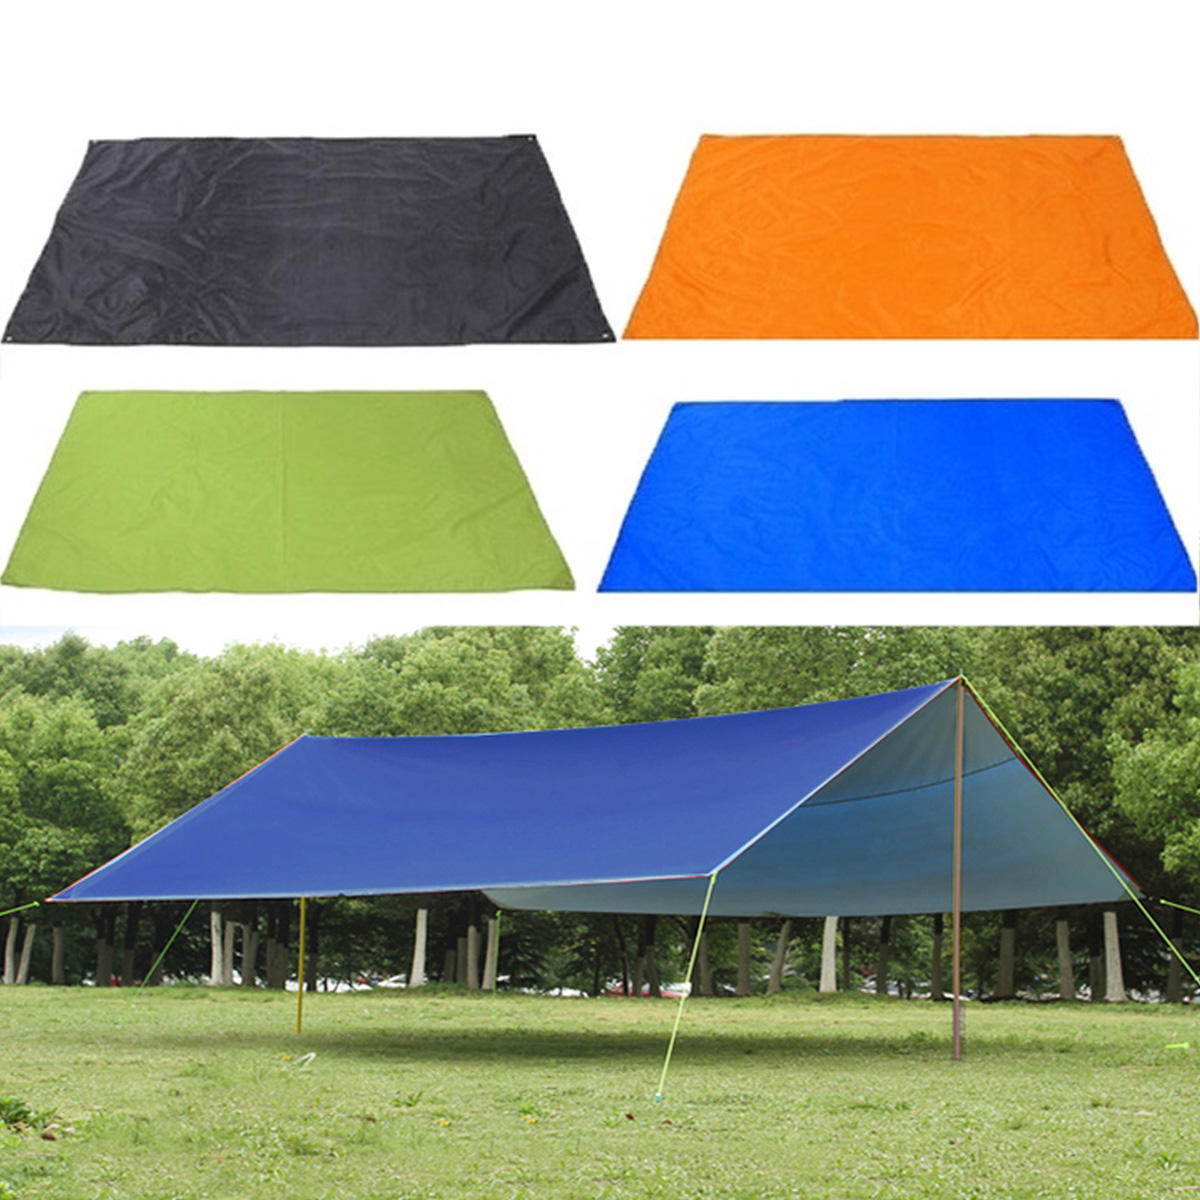 خيمة تخييم خارجية مقاومة للماء بمقاس 210 × 150 سم للحماية من الشمس والمطر والظل الملائم للنزهات